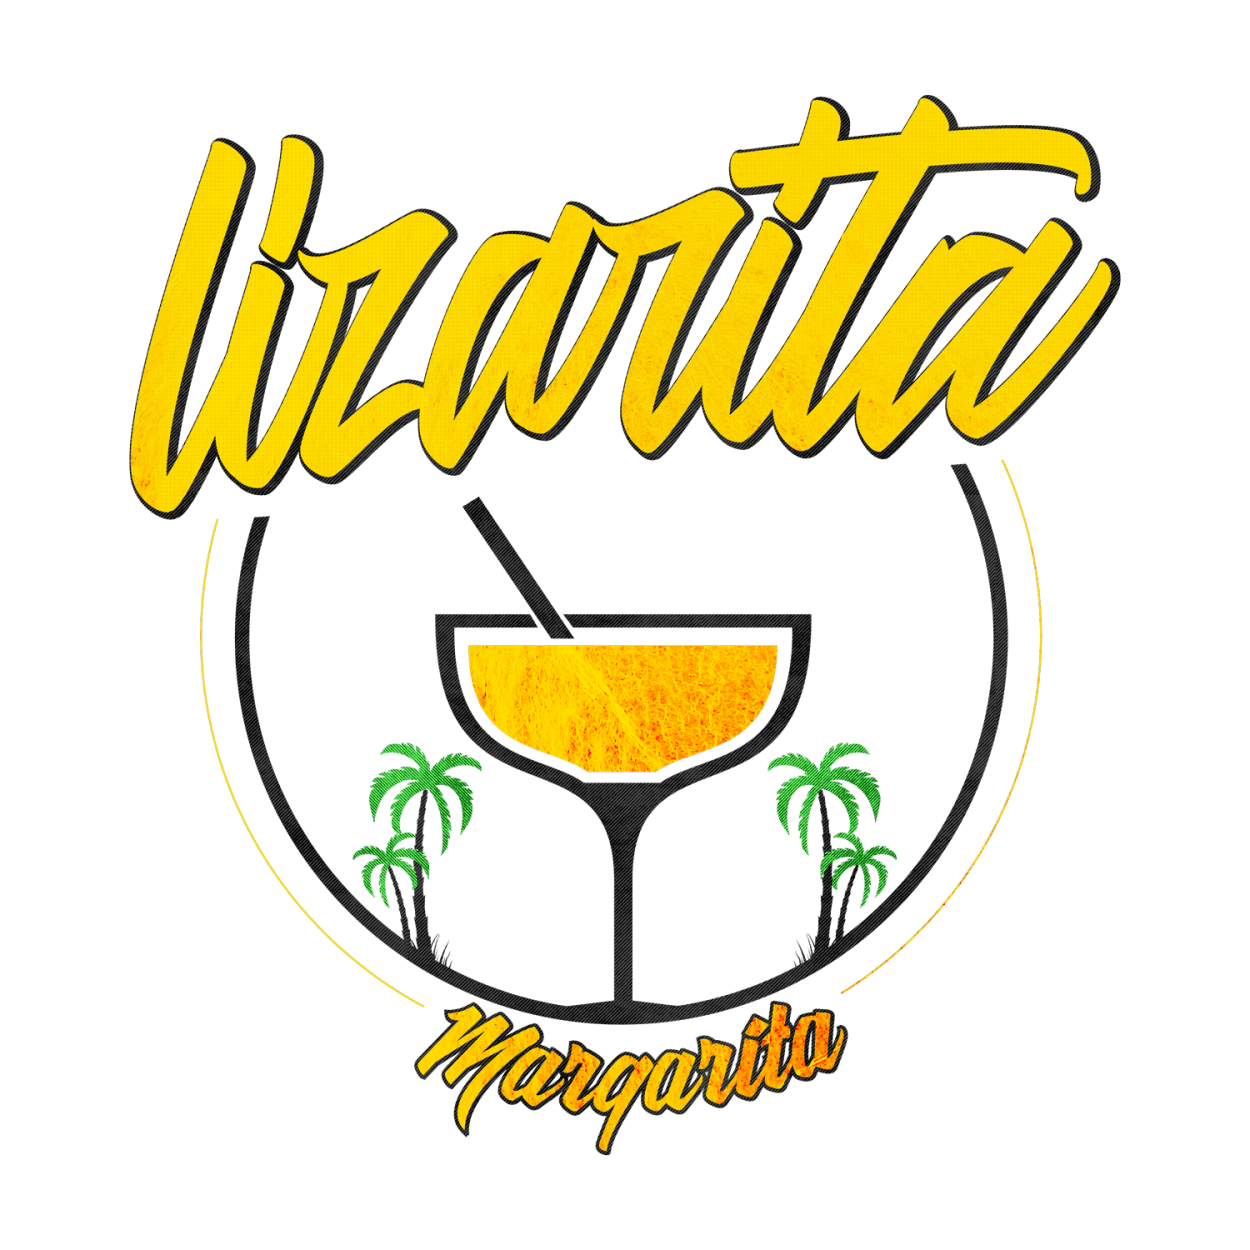 Margarita Logo - Lizarita Margarita Design Branched Off